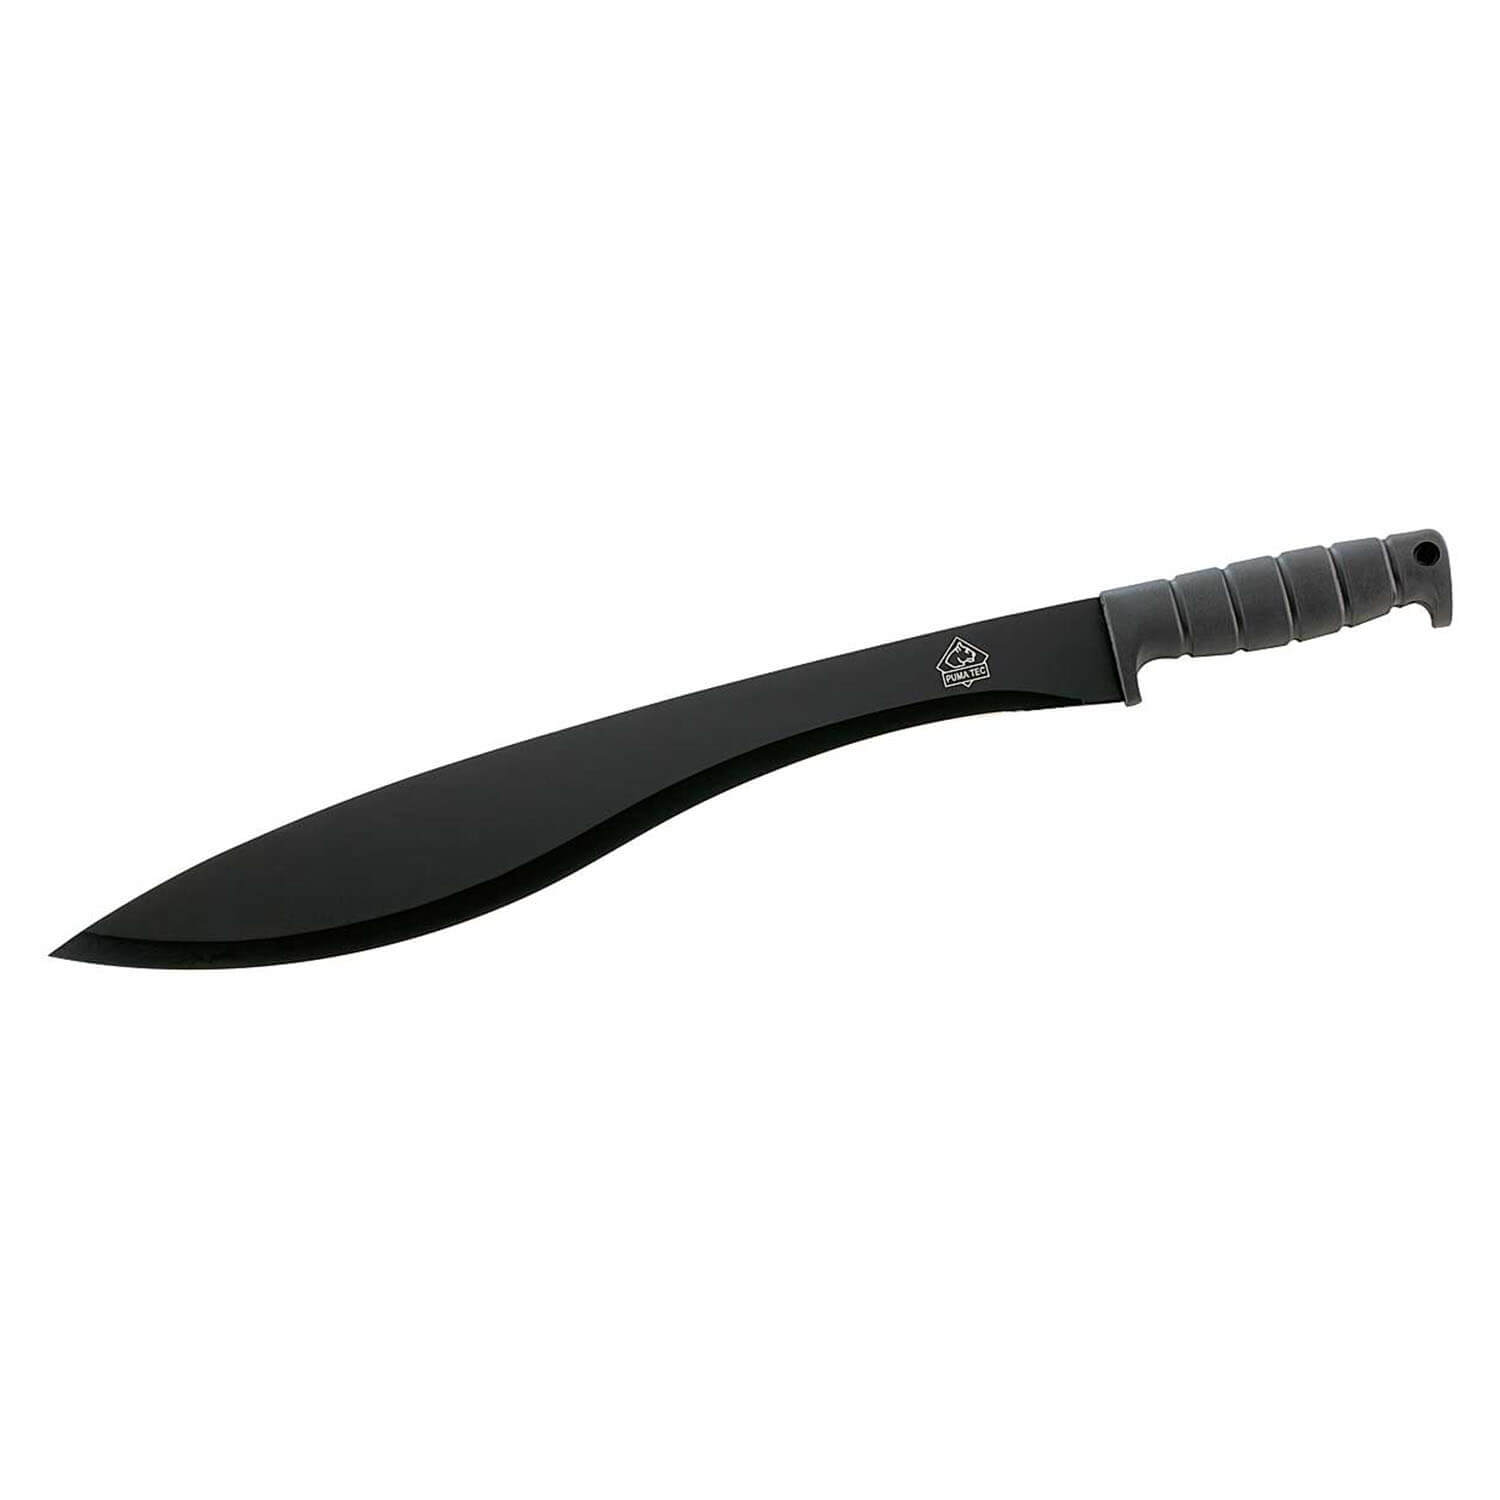 Puma Tec Machete - Hunting Knives